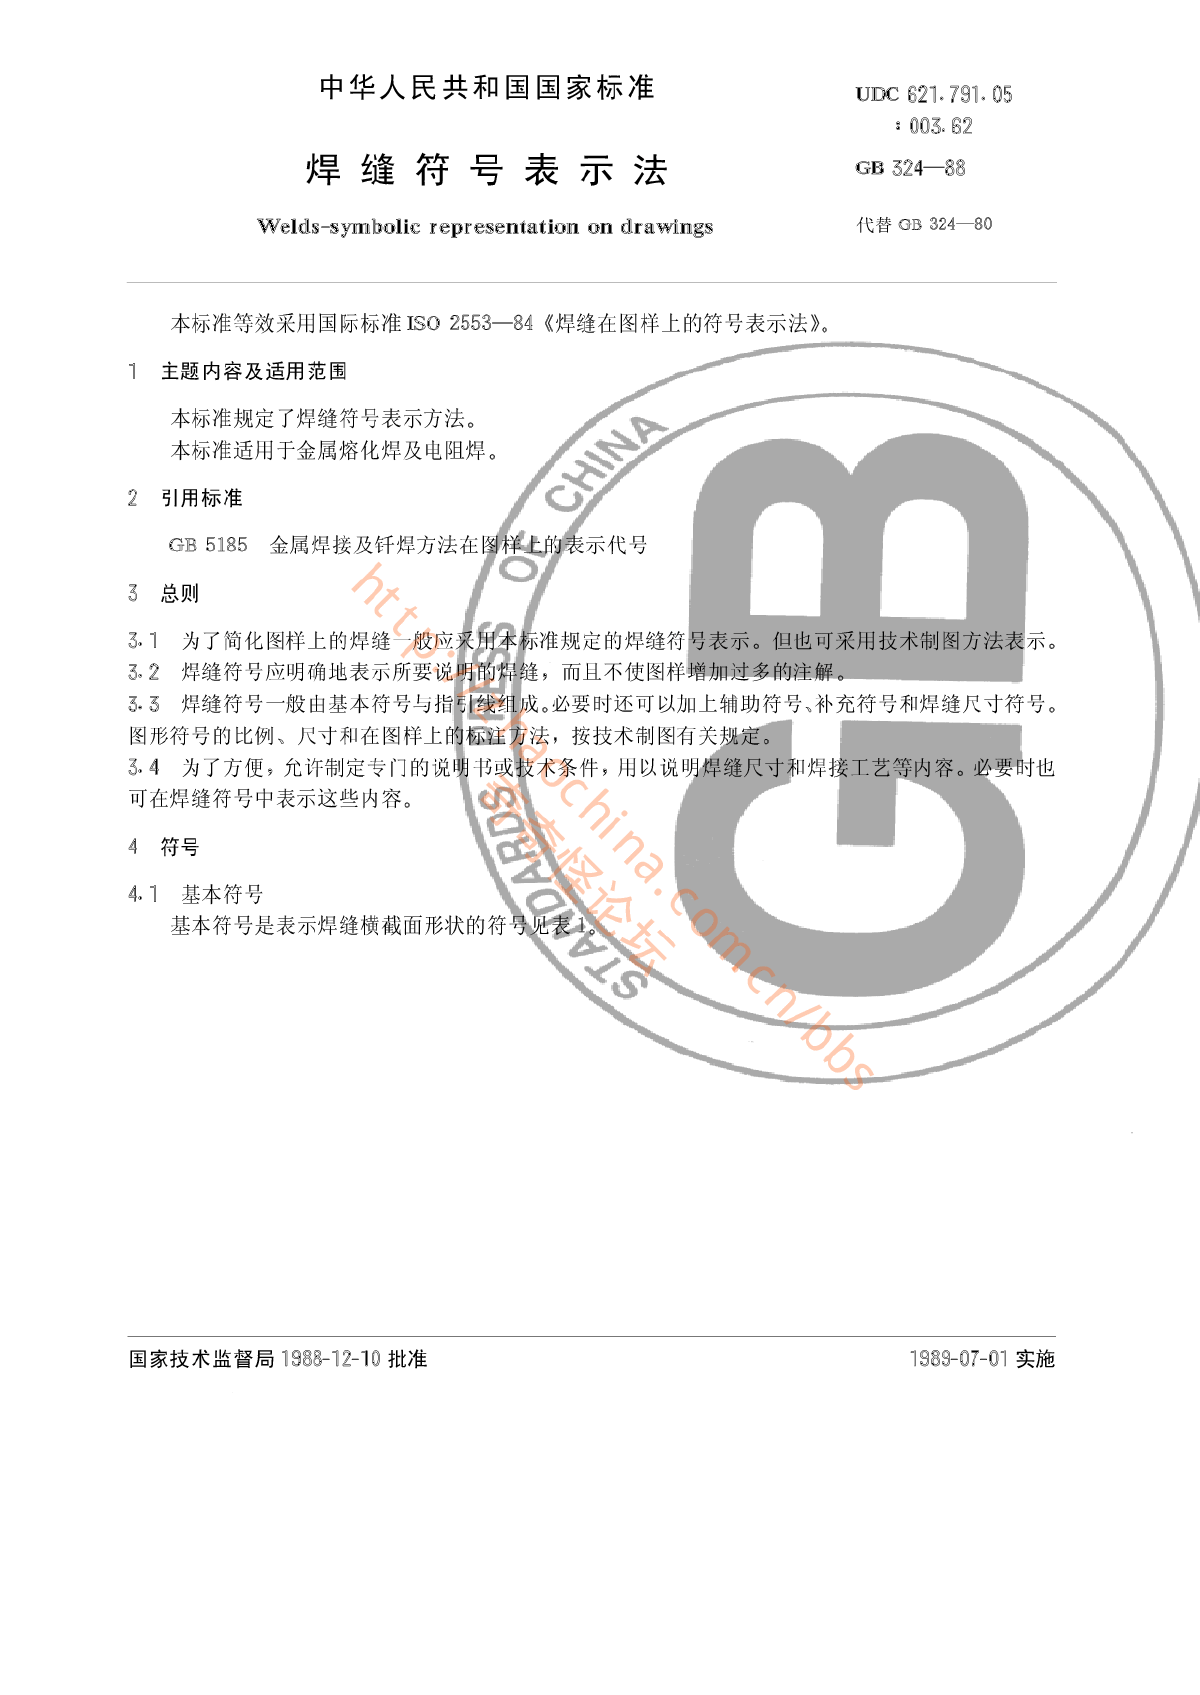 焊缝符号表示法_GB324-88.pdf-图一